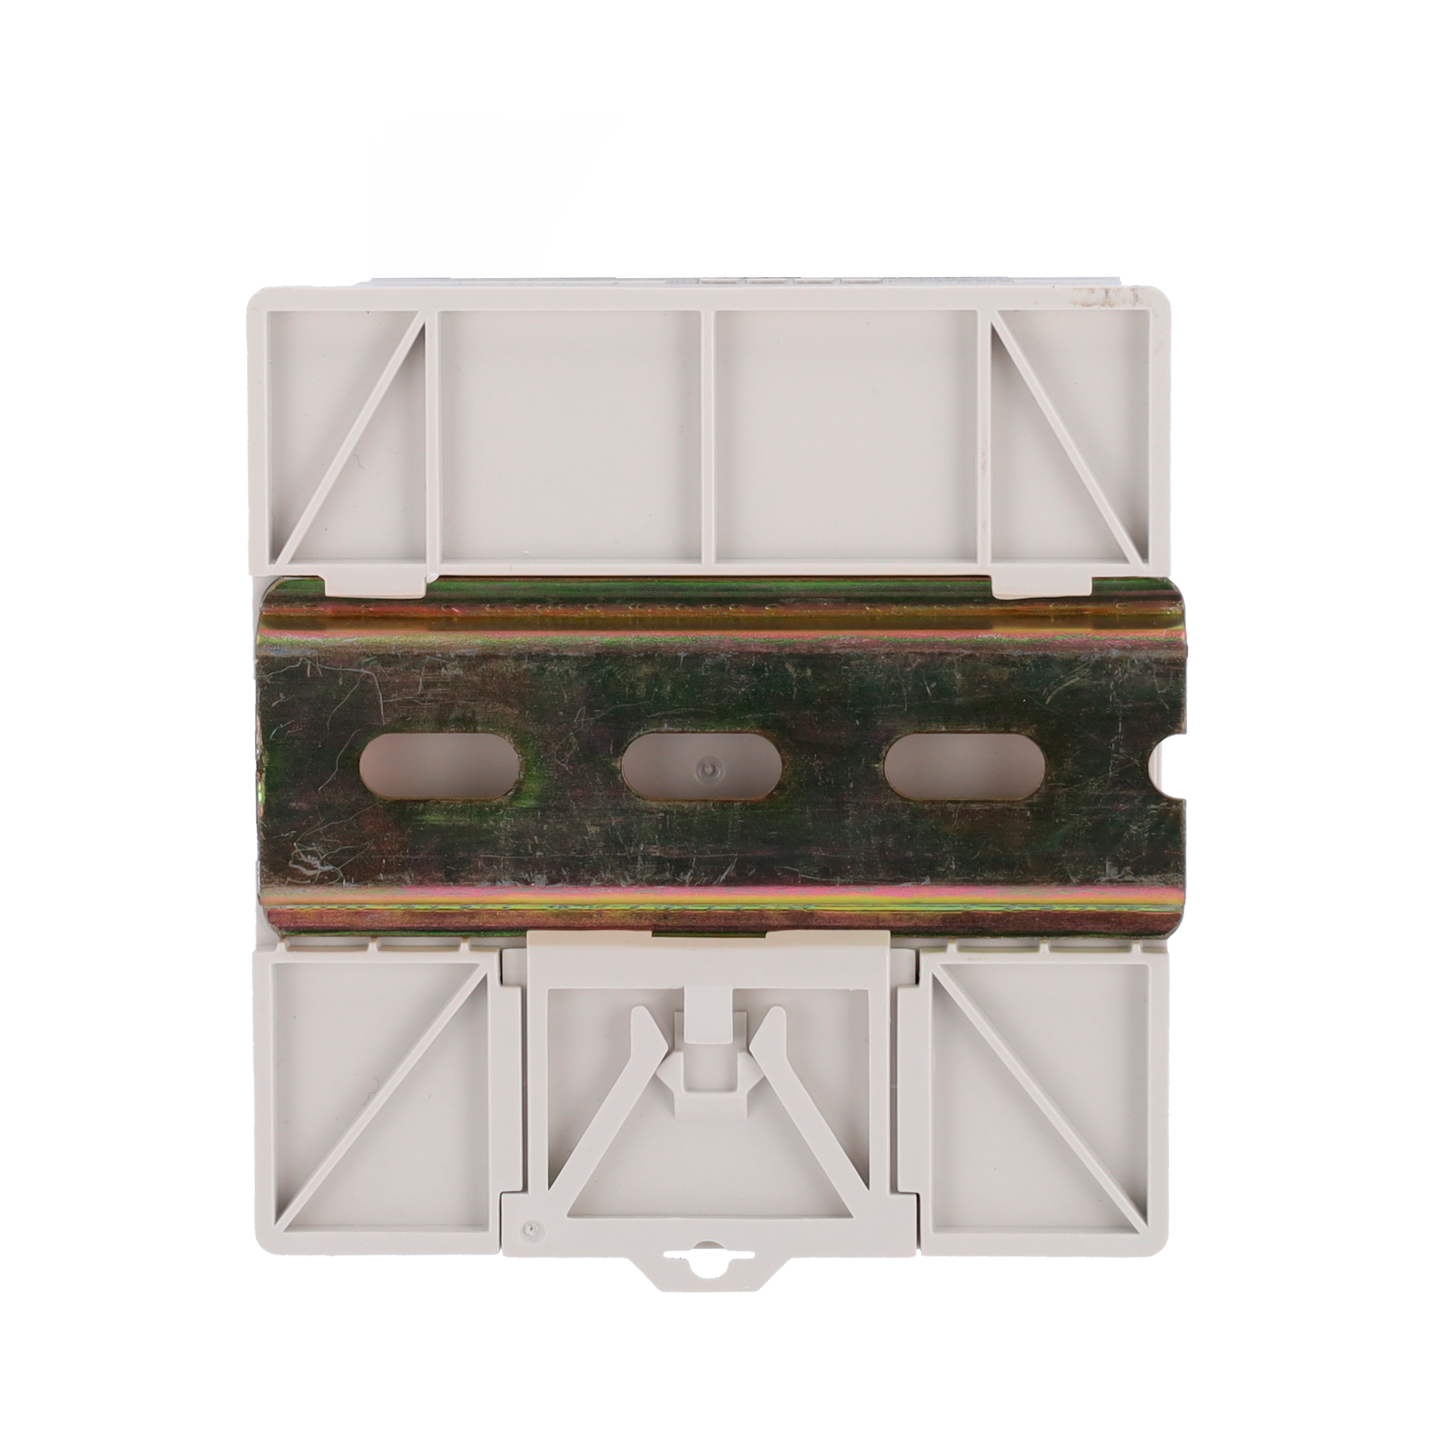 Alimentatore con funzione UPS - uscita DC 12 V 3 A / 36 W - Tensione in ingresso AC 100V ~ 240V 50Hz-60Hz -  97 (P) x 55 (I) x 88 (H) mm - Montaggio su guida DIN - Protezione: Sovraccarico/Sovratensione/Cortocircuito